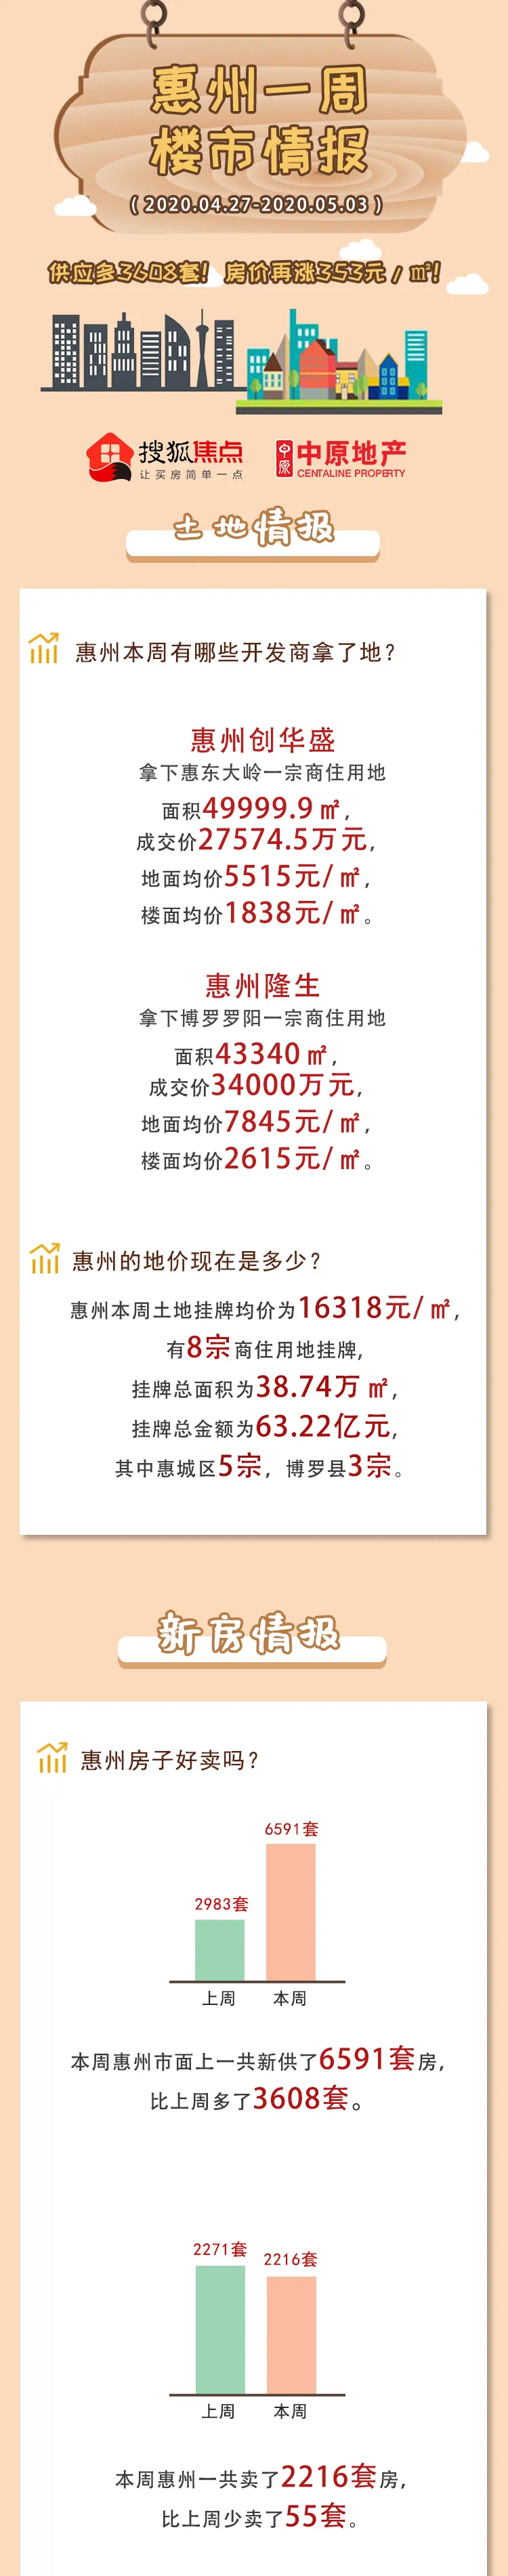 供应激增3608套!房价再涨353元/㎡!惠州楼市回暖明显-惠州